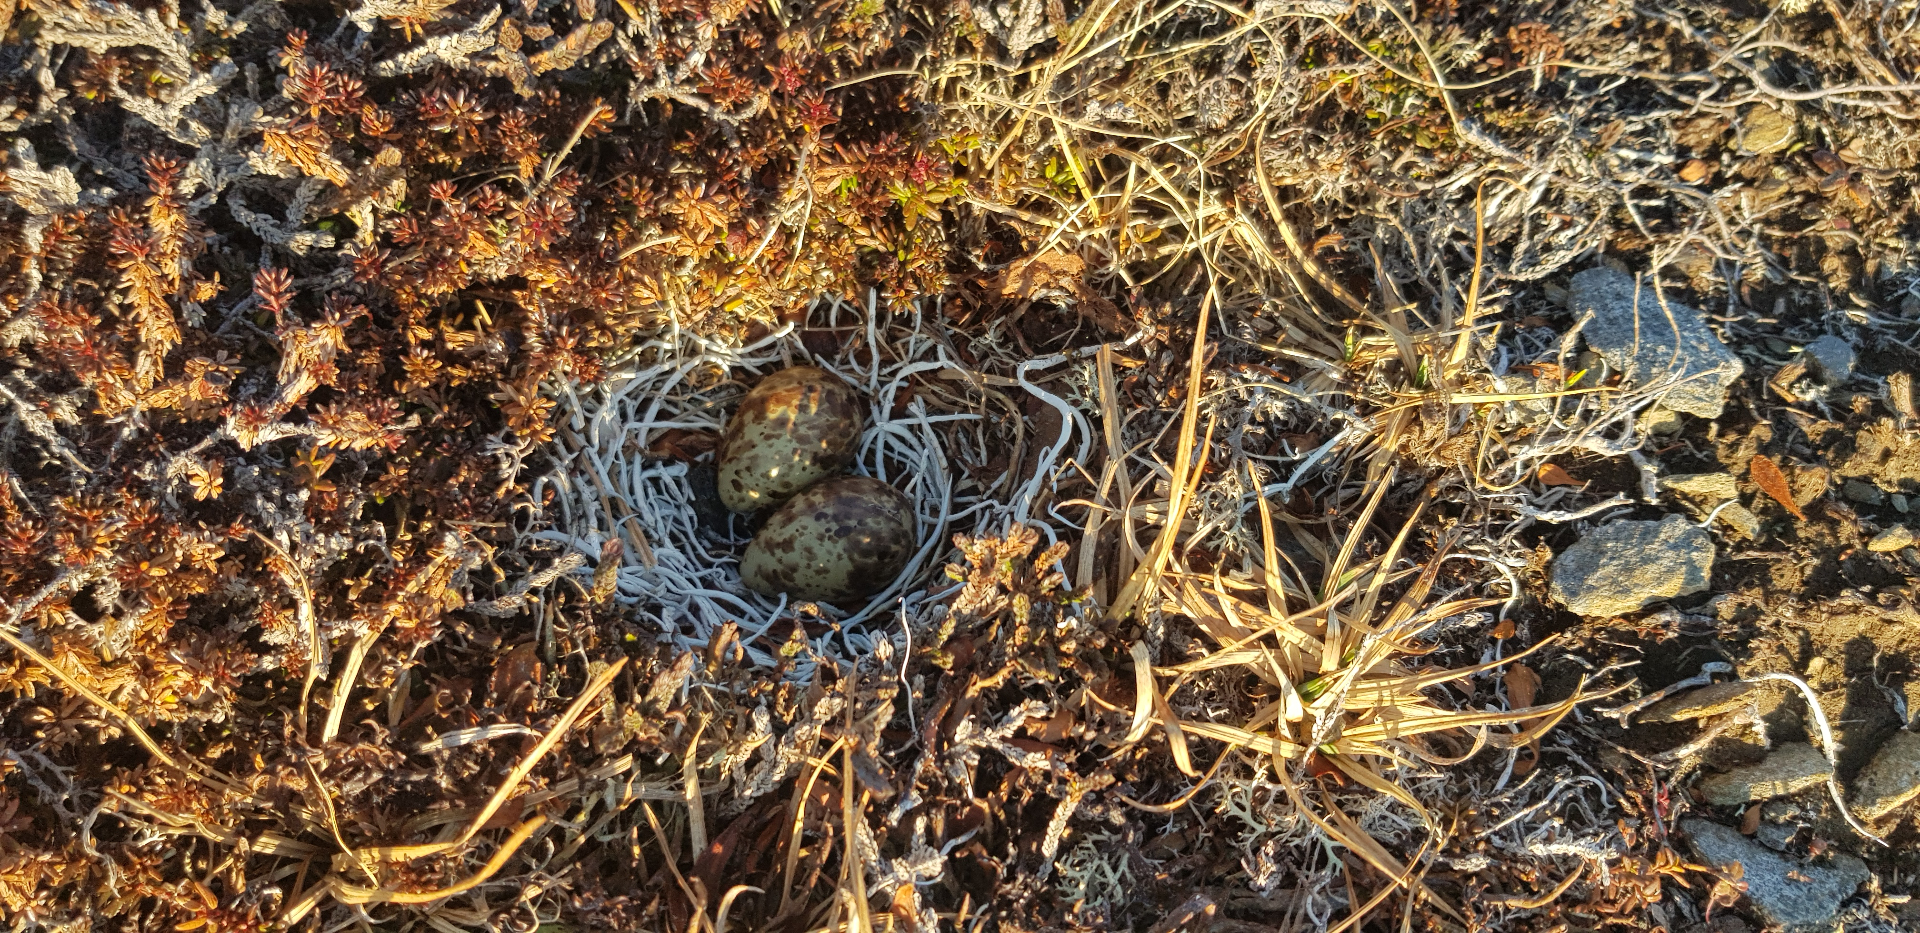 The first nest was found by Clazina!!! Photo: Clazina Kwakernaak